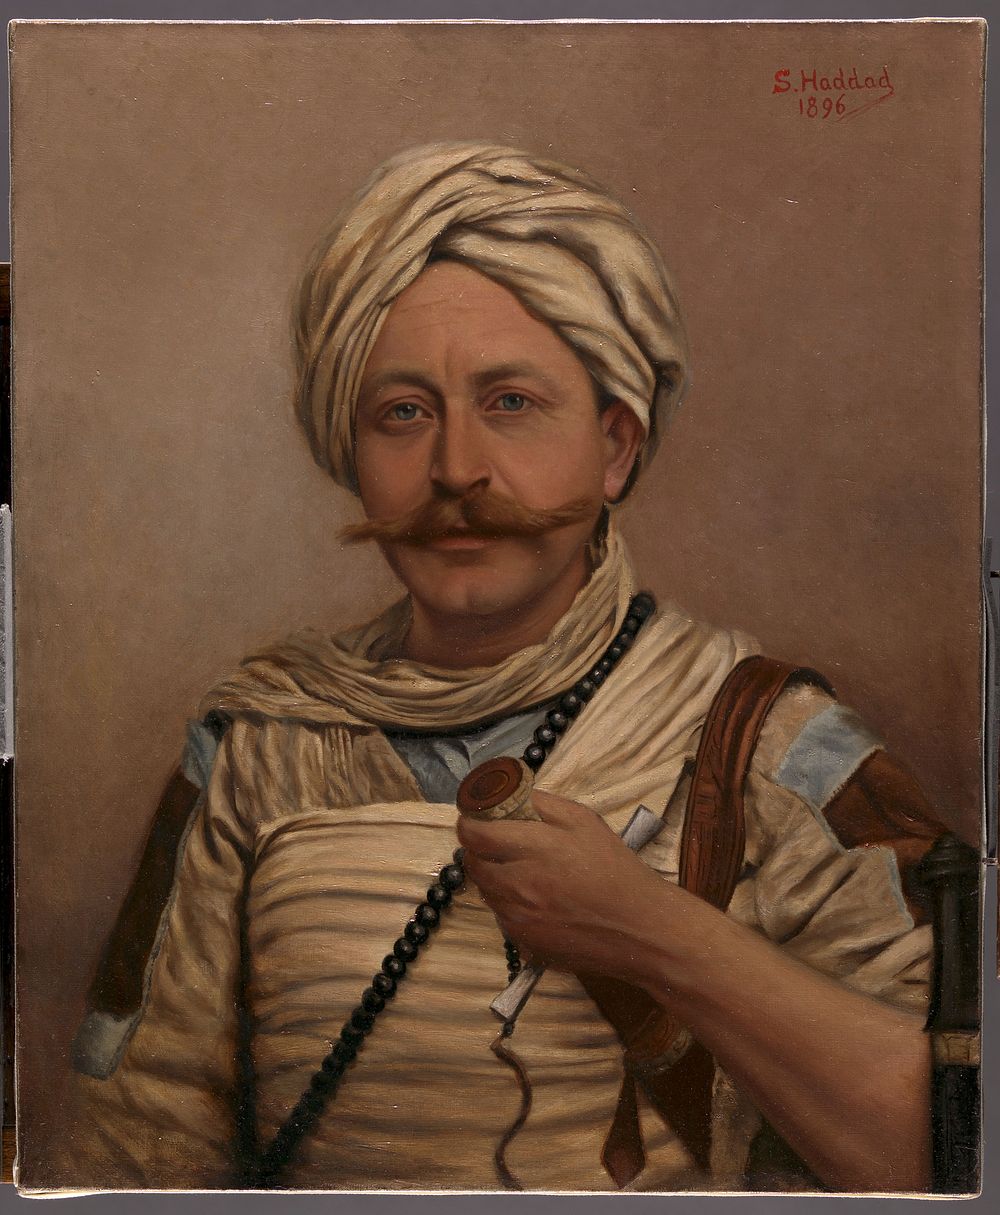 Slatin Pasha (Sir Rudolf Carl Slatin). Oil painting by Salim S. Haddad, 1896.